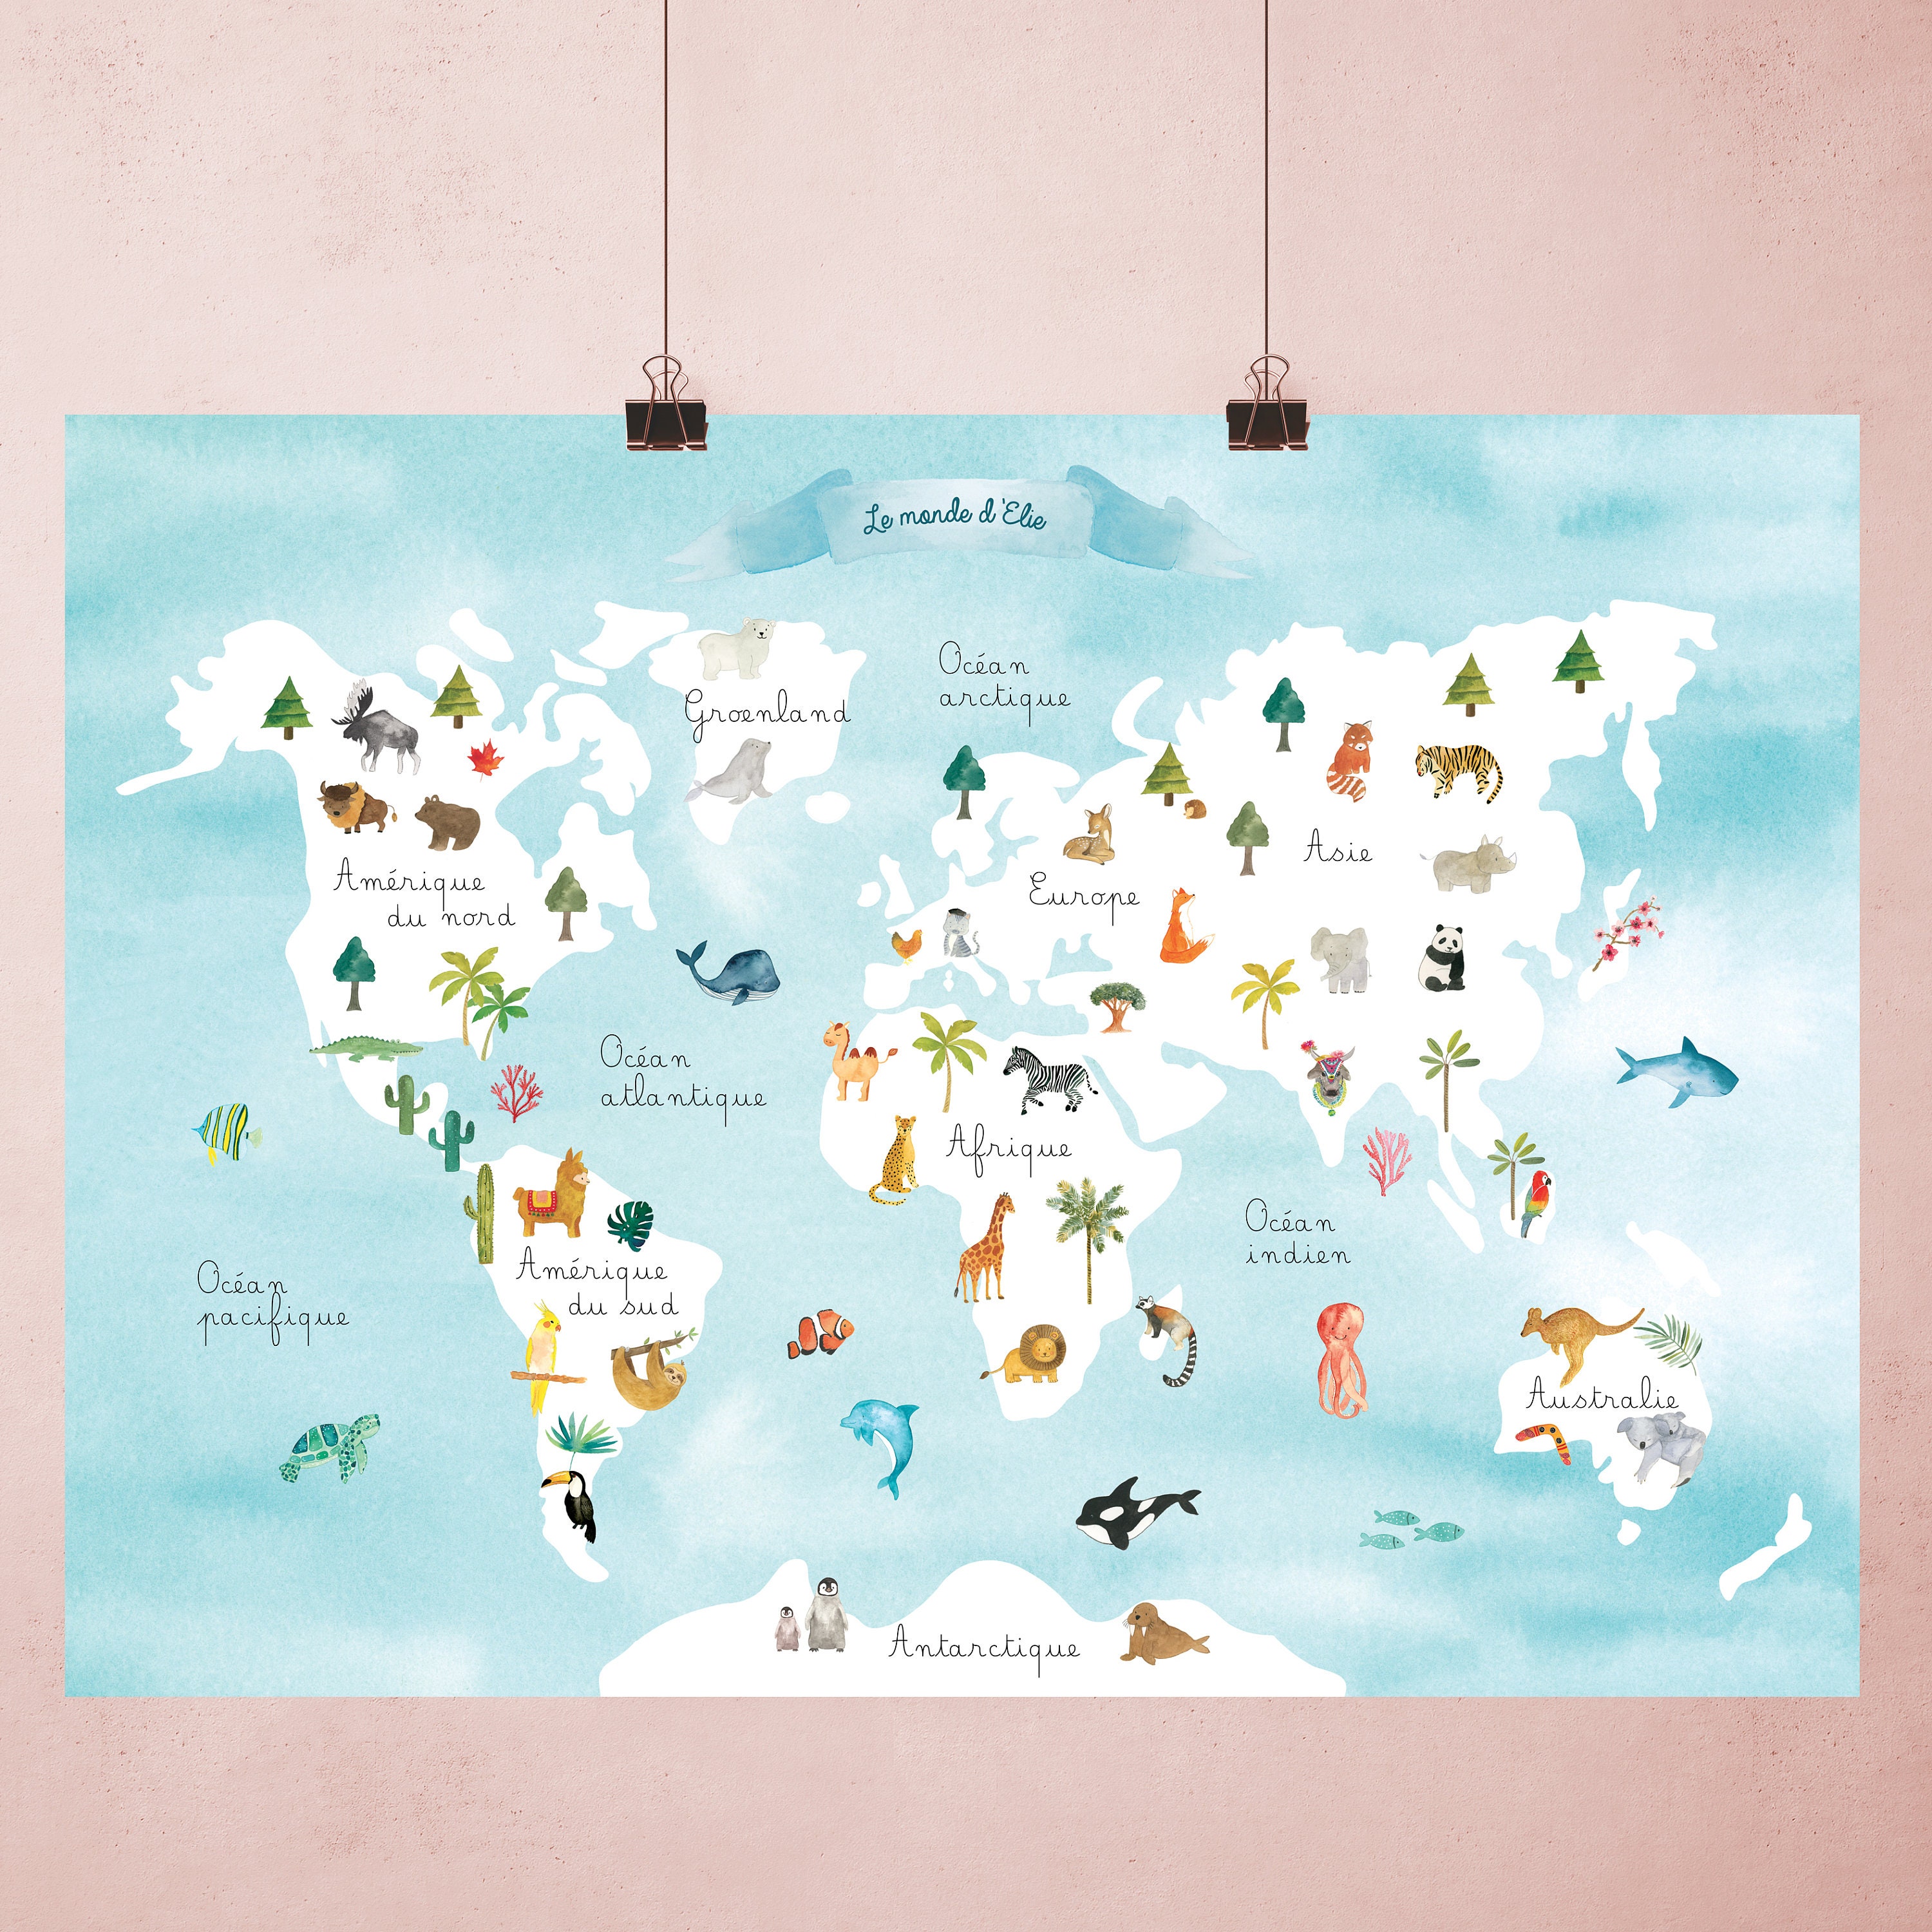 Carte du monde en liège - Woody Map Aquarelle New Classic / 90 x 60 cm /  Cadre blanc